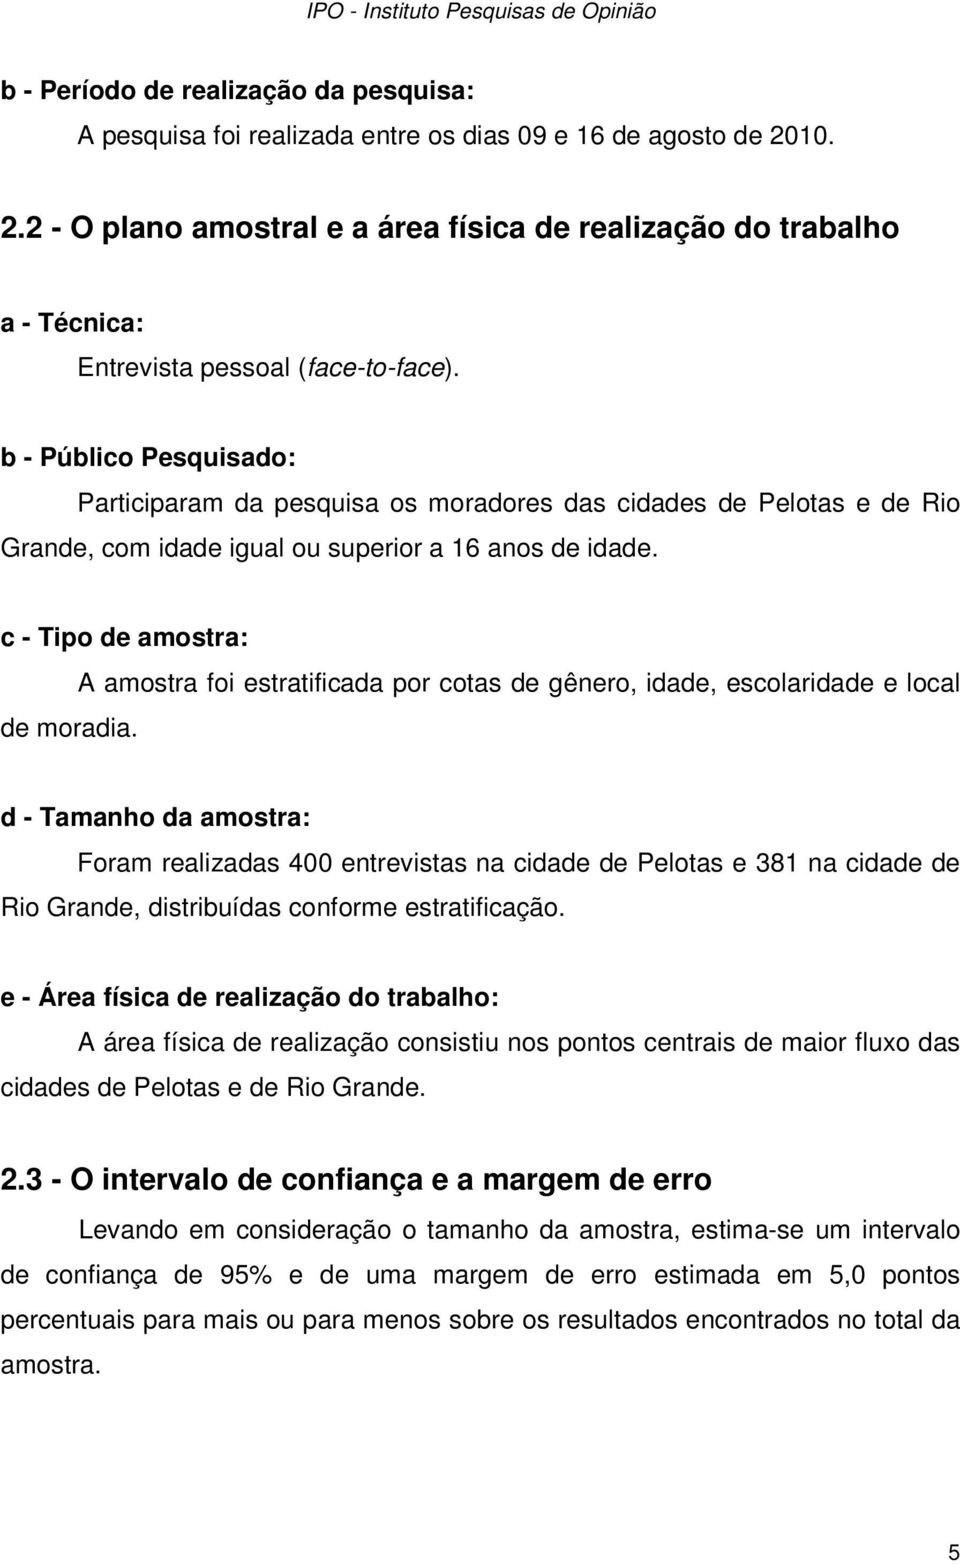 b - Público Pesquisado: Participaram da pesquisa os moradores das cidades de Pelotas e de Rio Grande, com idade igual ou superior a 16 anos de idade. c - Tipo de amostra: de moradia.